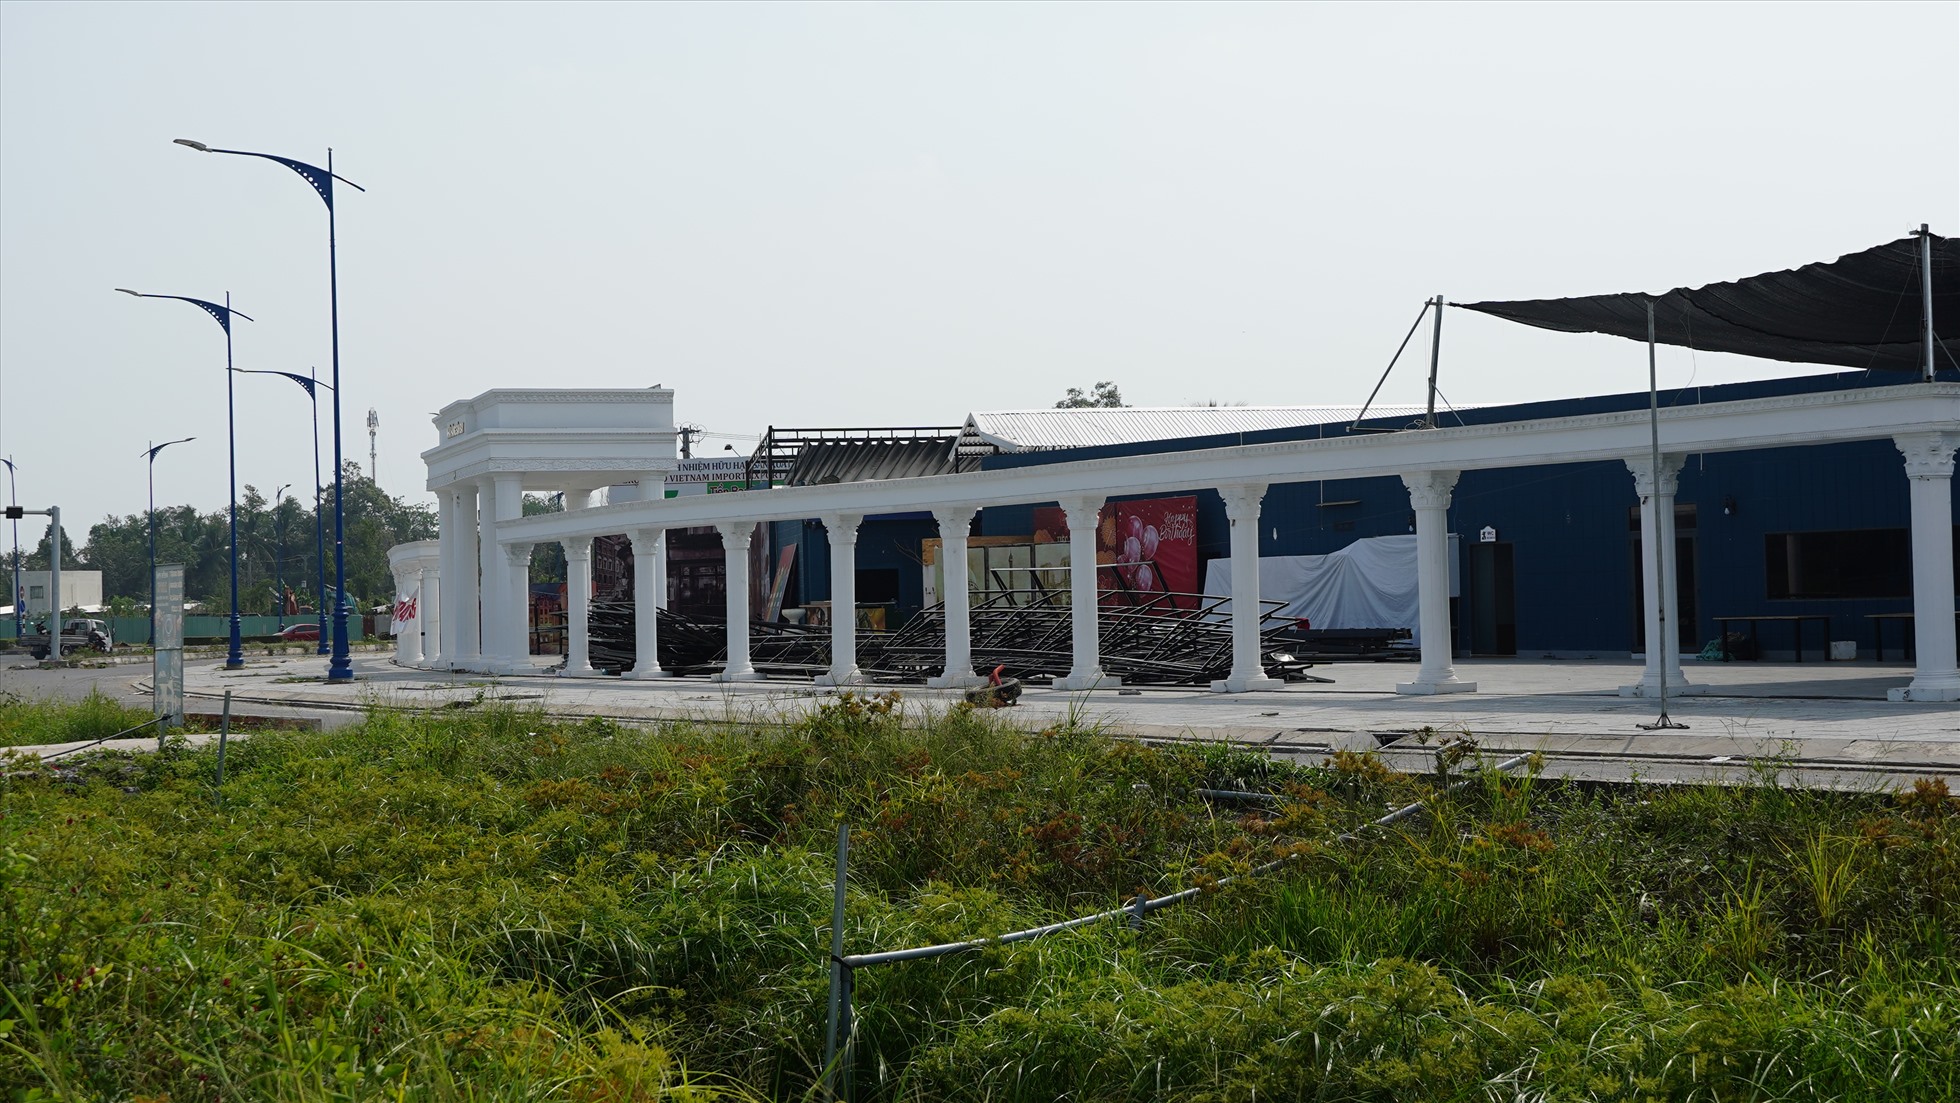 Ghi nhận của Lao Động sáng 5.3, công trình Nhà hàng Sân Bay đã được tháo dỡ phần nóc và nhiều hạng mục khác.